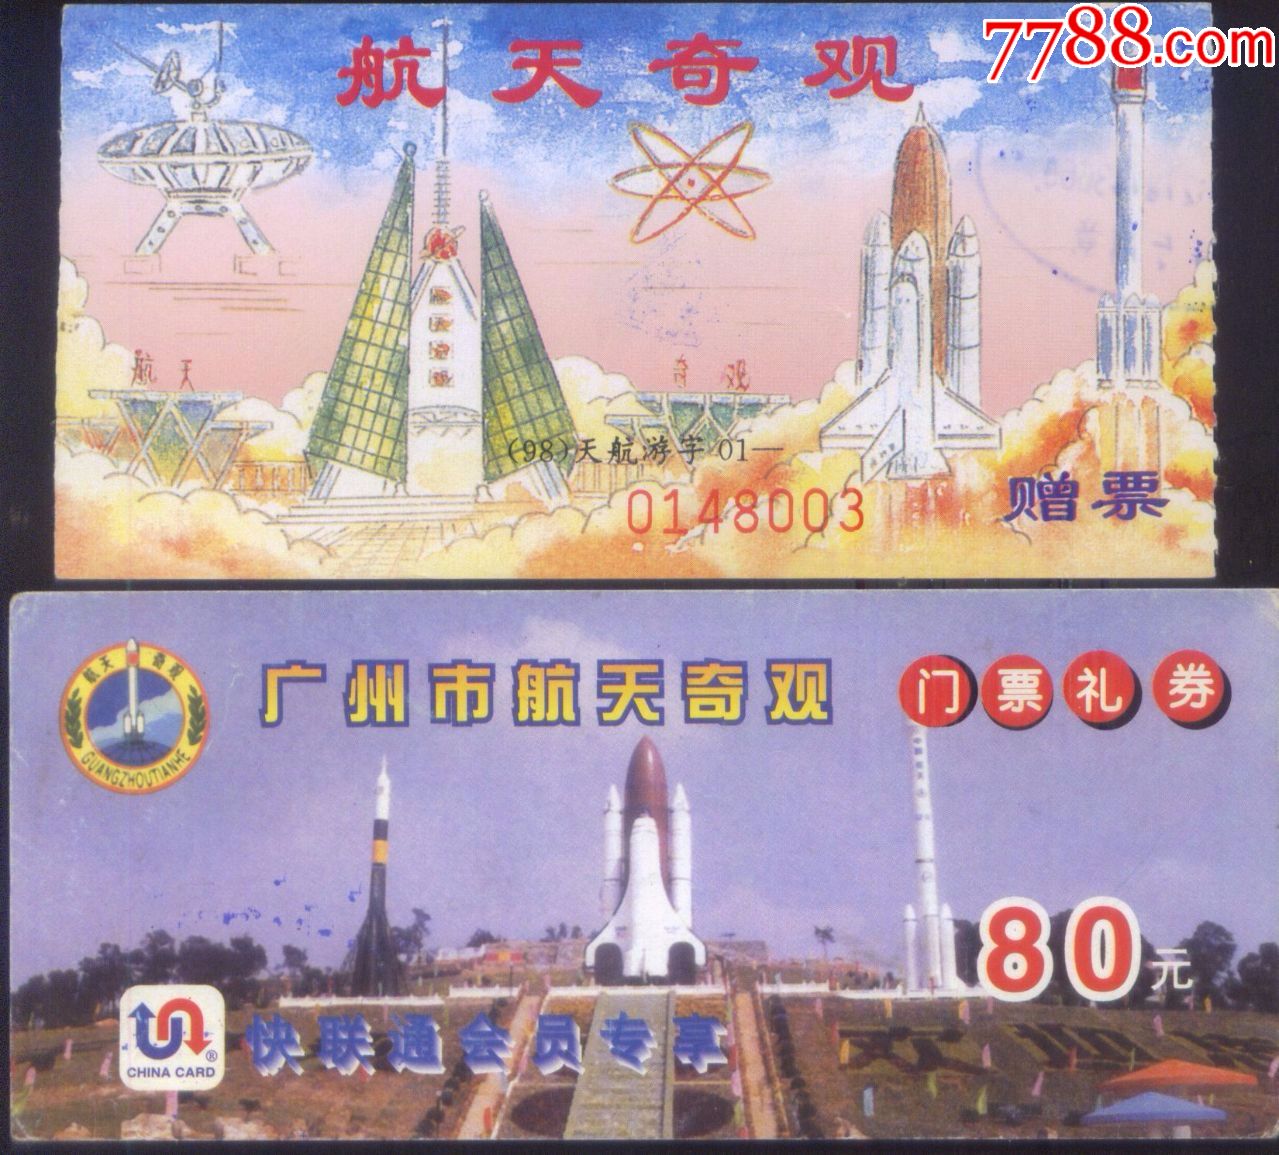 己关闭广州航天奇观早期门票礼券和赠票二种不同版别的门券正背面图